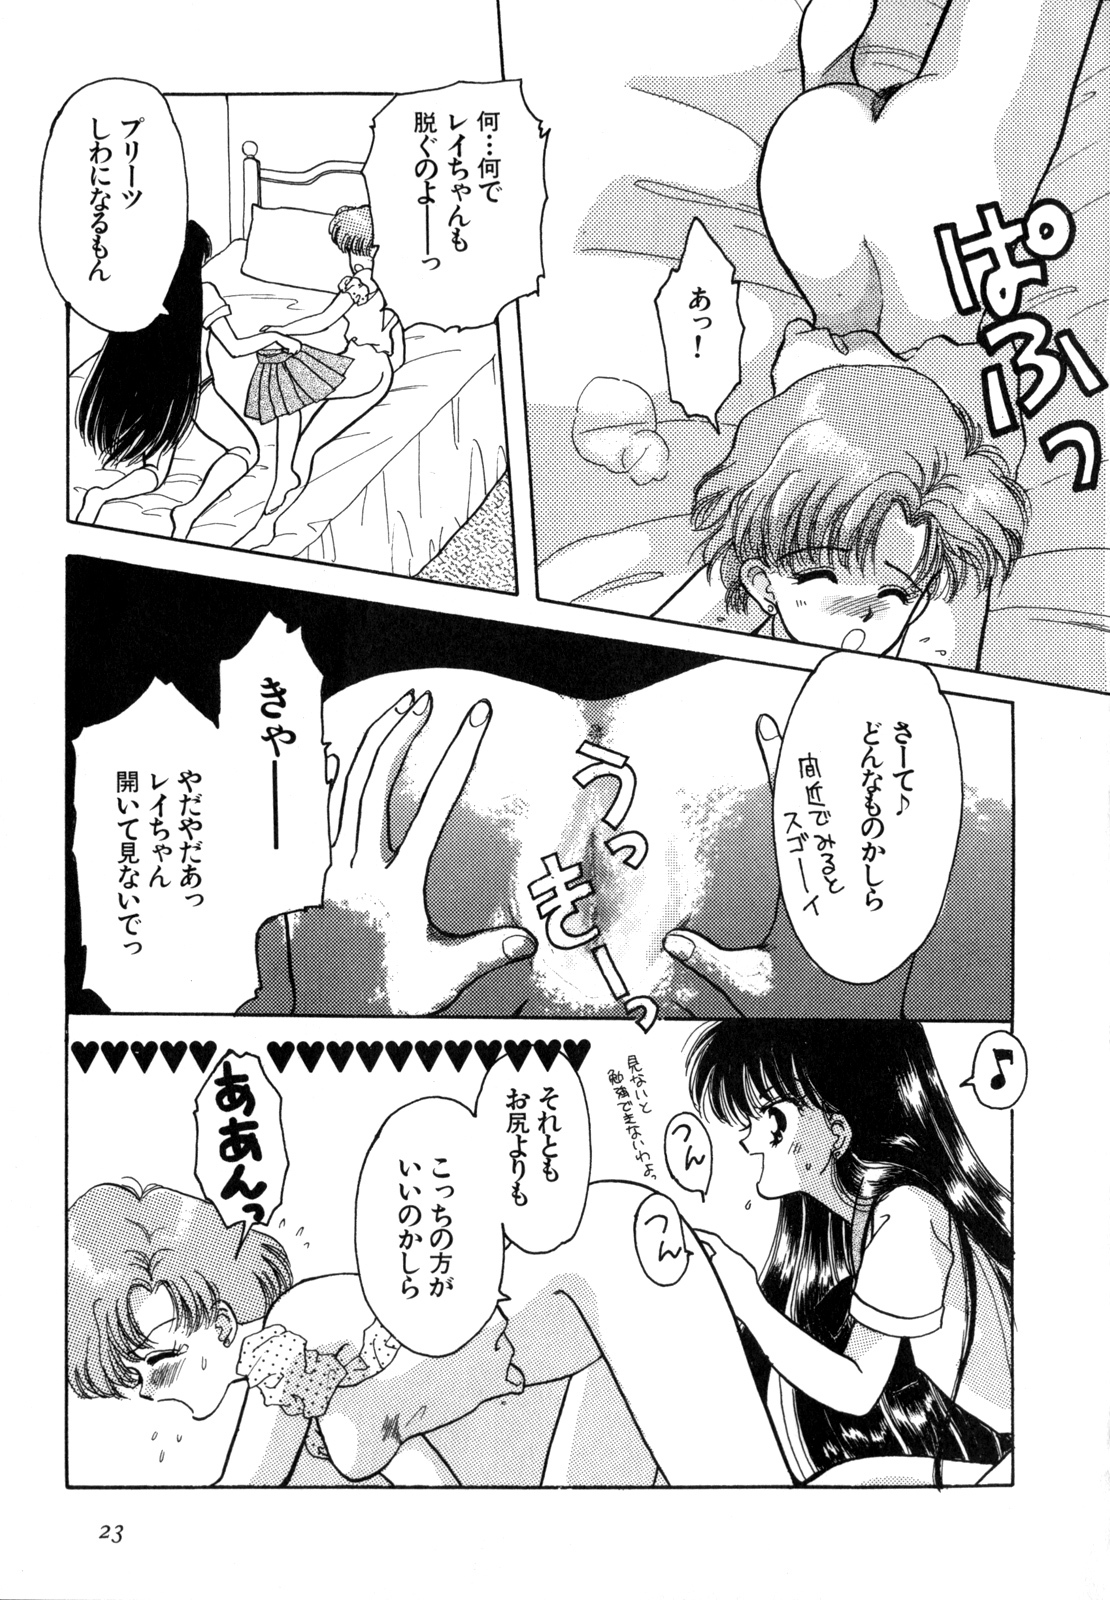 [Anthology] Lunatic Party 4 (Bishoujo Senshi Sailor Moon) page 24 full